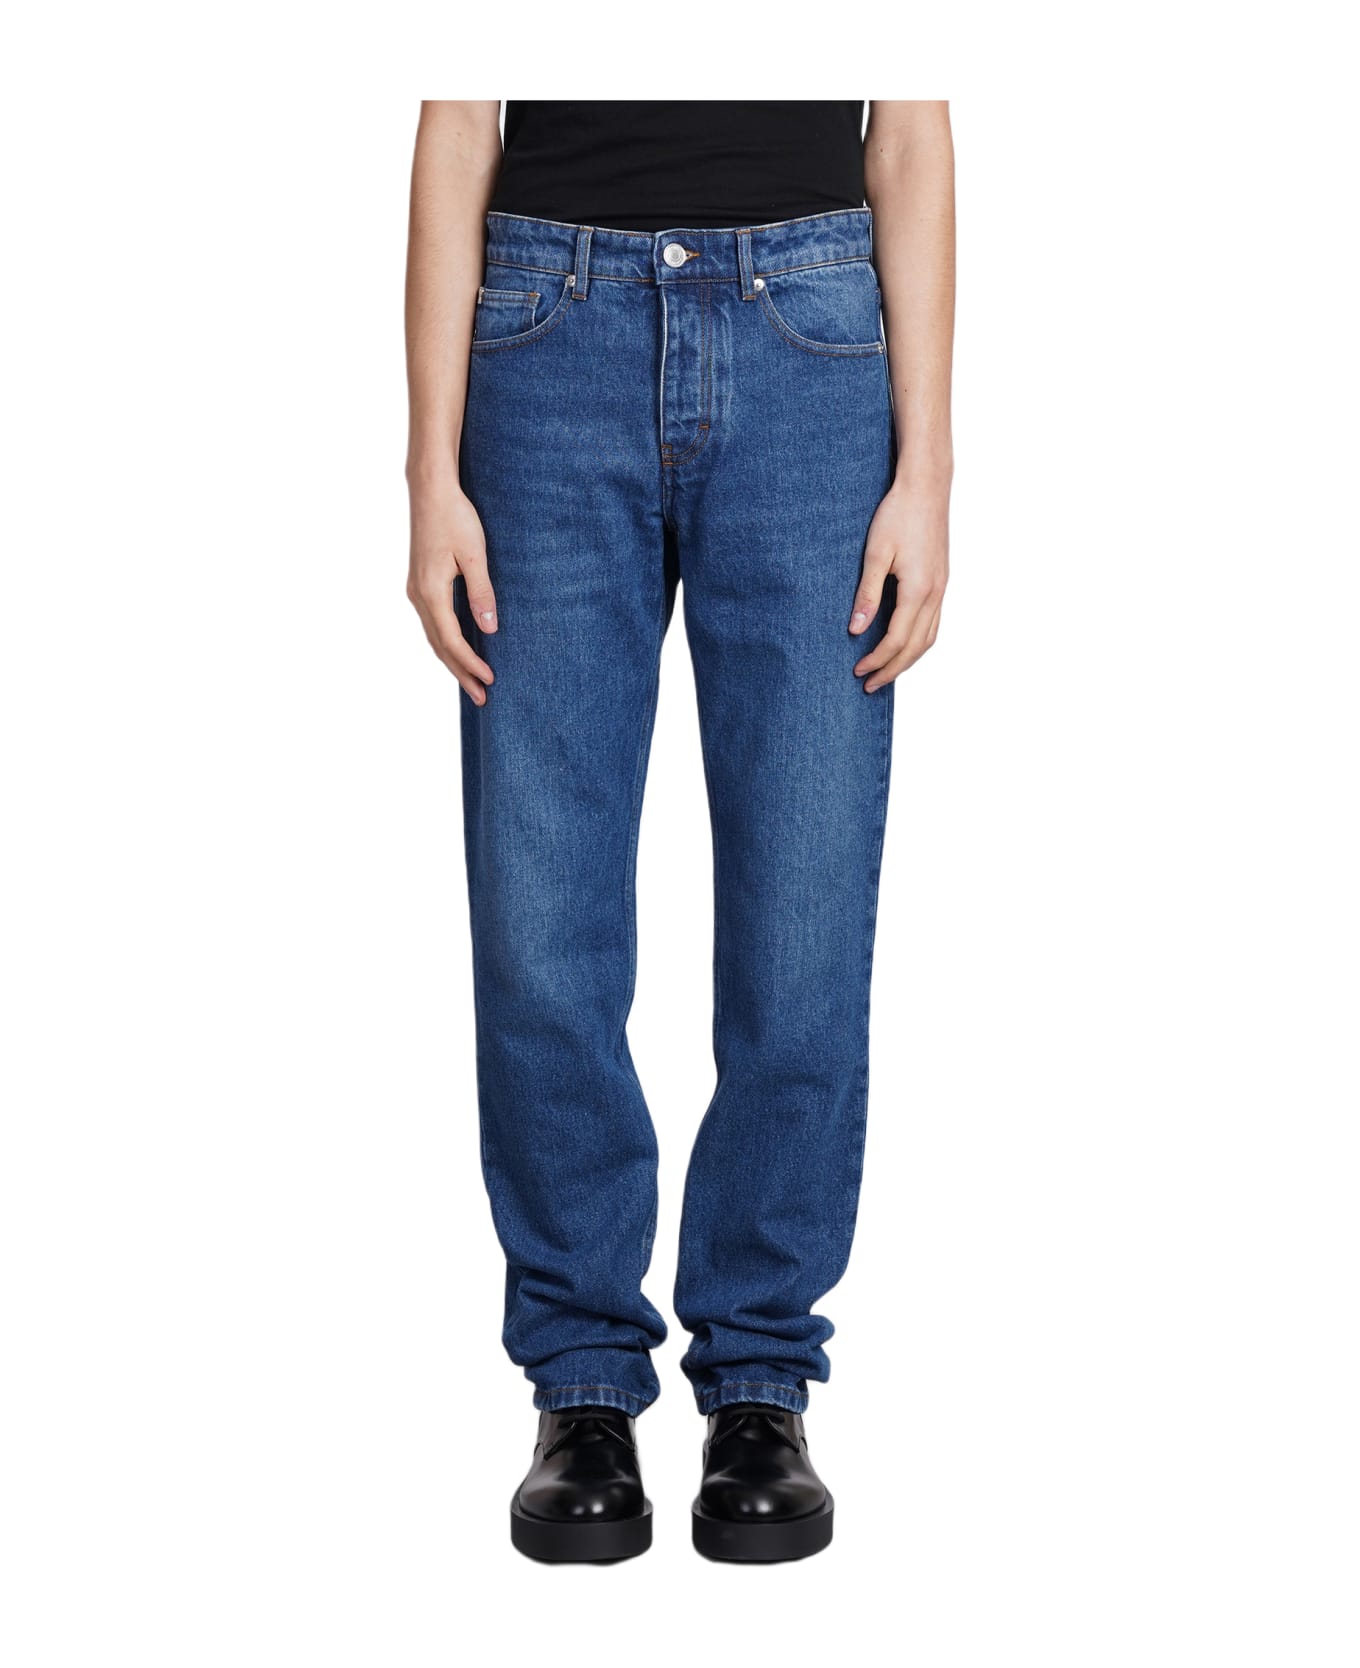 Ami Alexandre Mattiussi Jeans In Blue Cotton - blue デニム